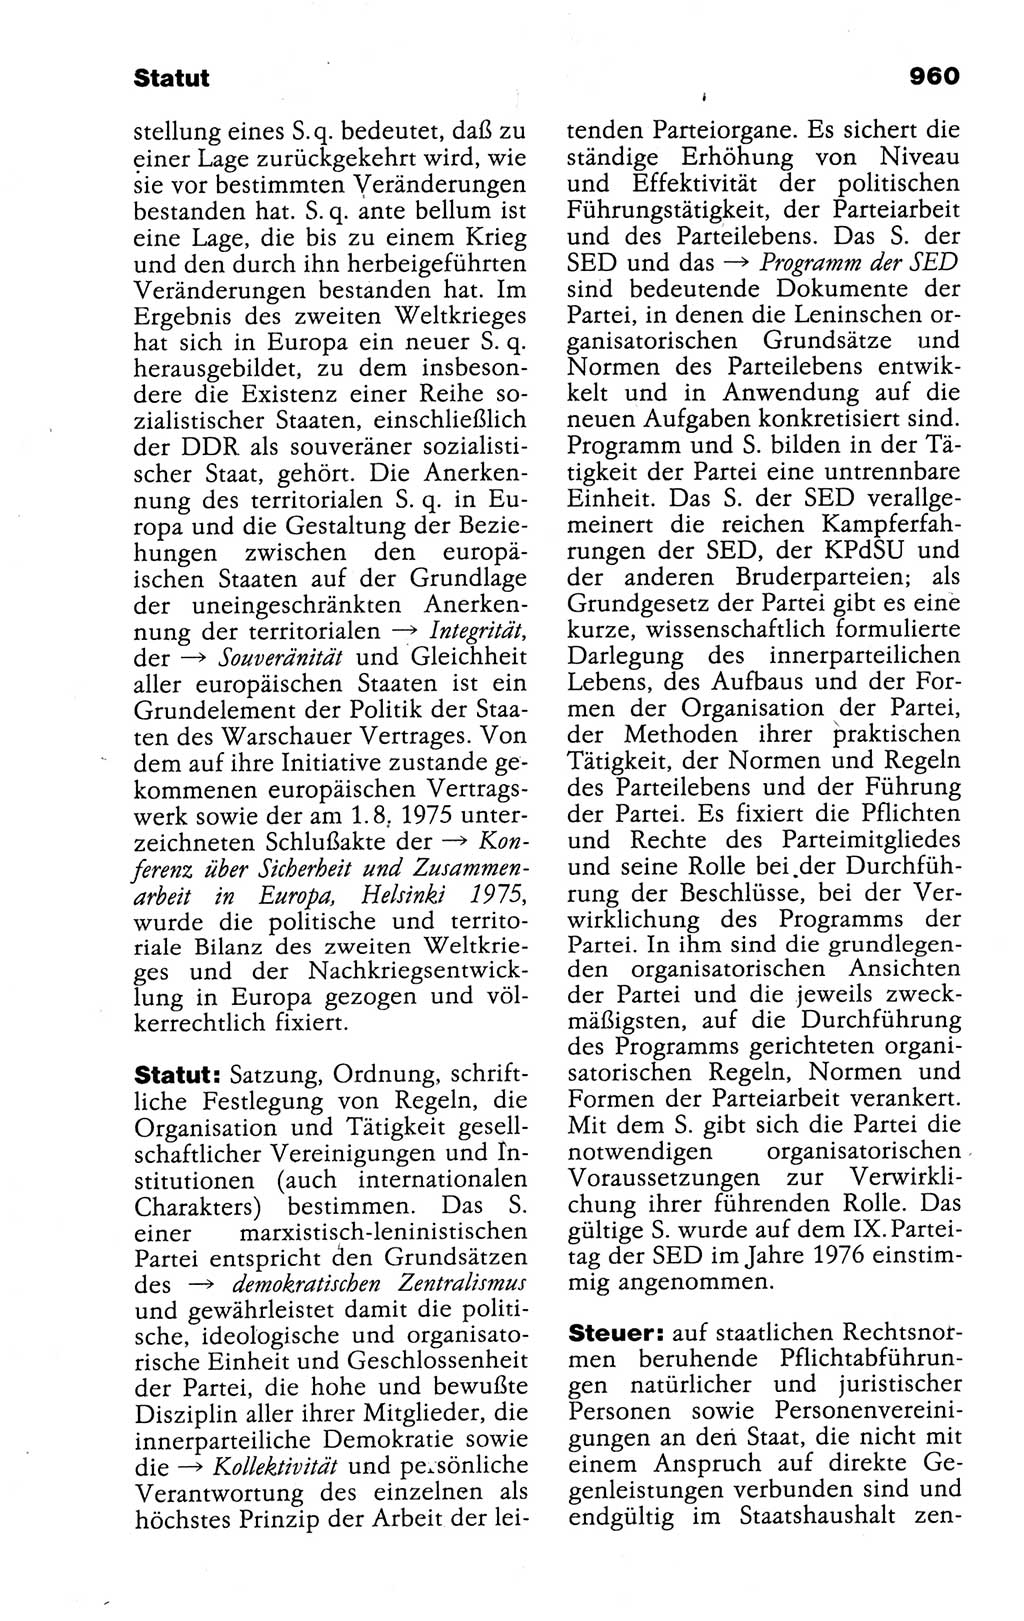 Kleines politisches Wörterbuch [Deutsche Demokratische Republik (DDR)] 1988, Seite 960 (Kl. pol. Wb. DDR 1988, S. 960)